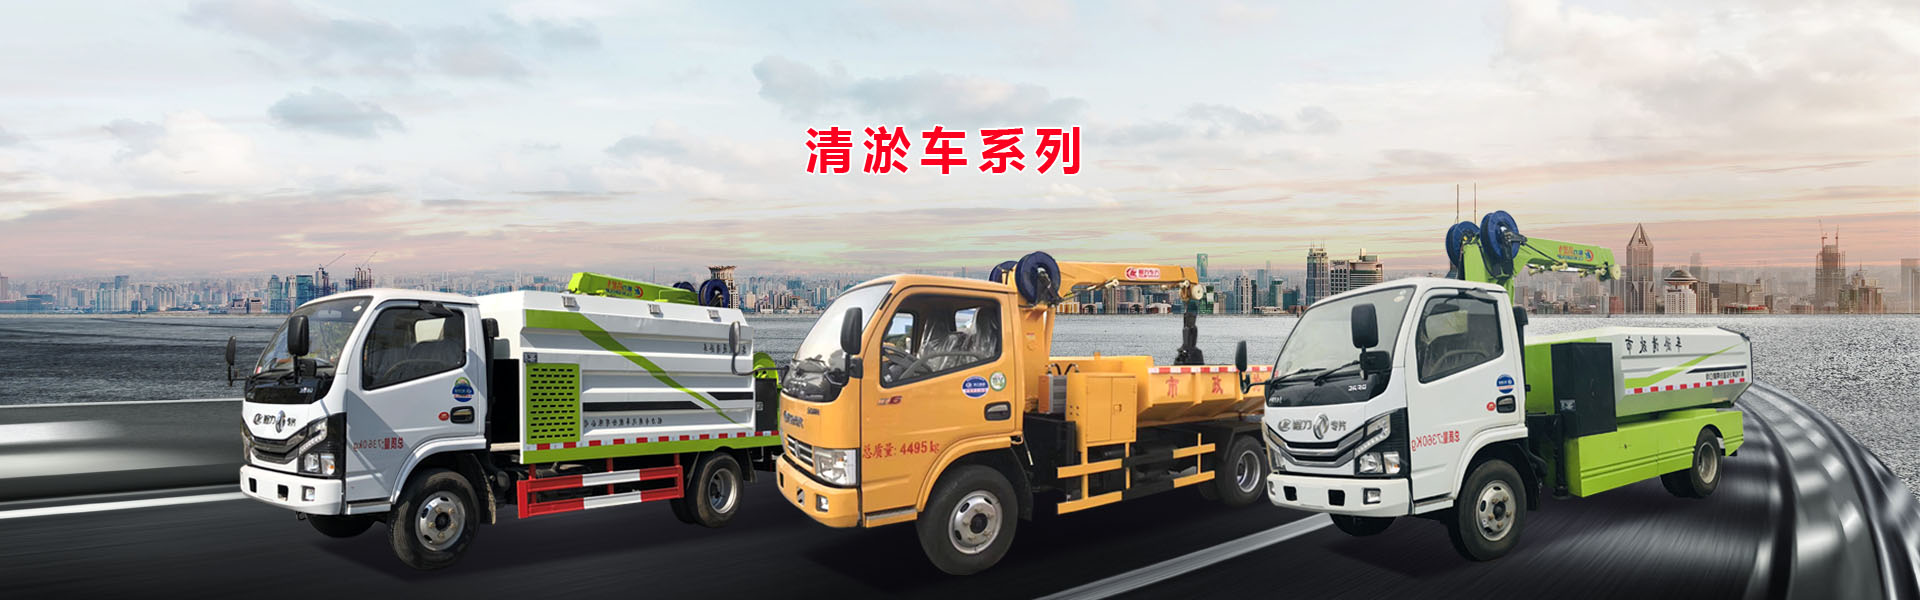 國六東風抓泥清淤車上藍牌容量大-程力專用汽車股份有限公司